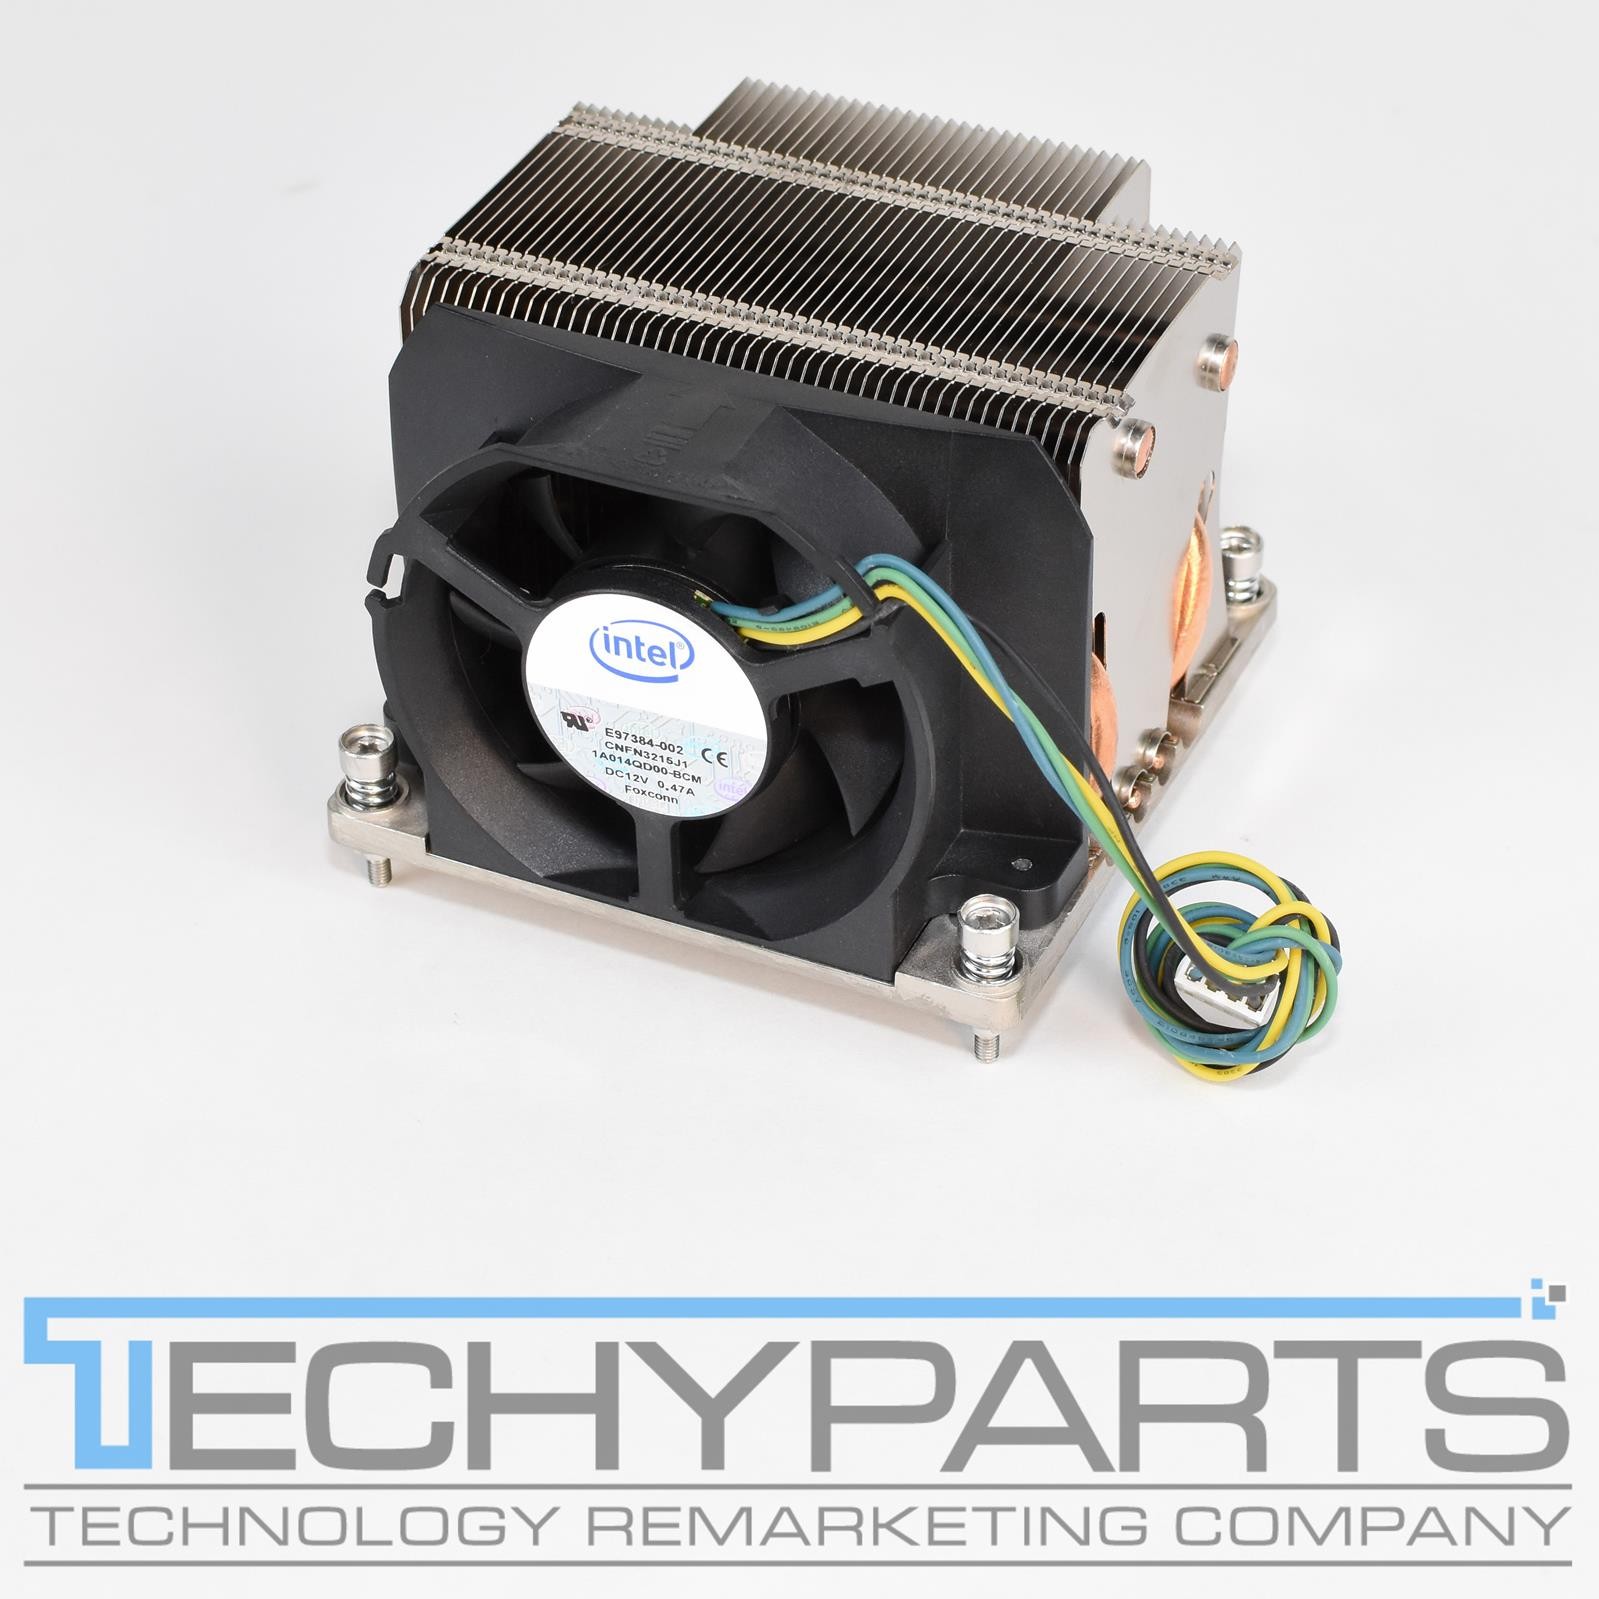 Lad os gøre det tirsdag let at blive såret Intel Xeon Socket LGA1366 Heatsink Cooler Fan Copper Base Heatpipe  E97384-002